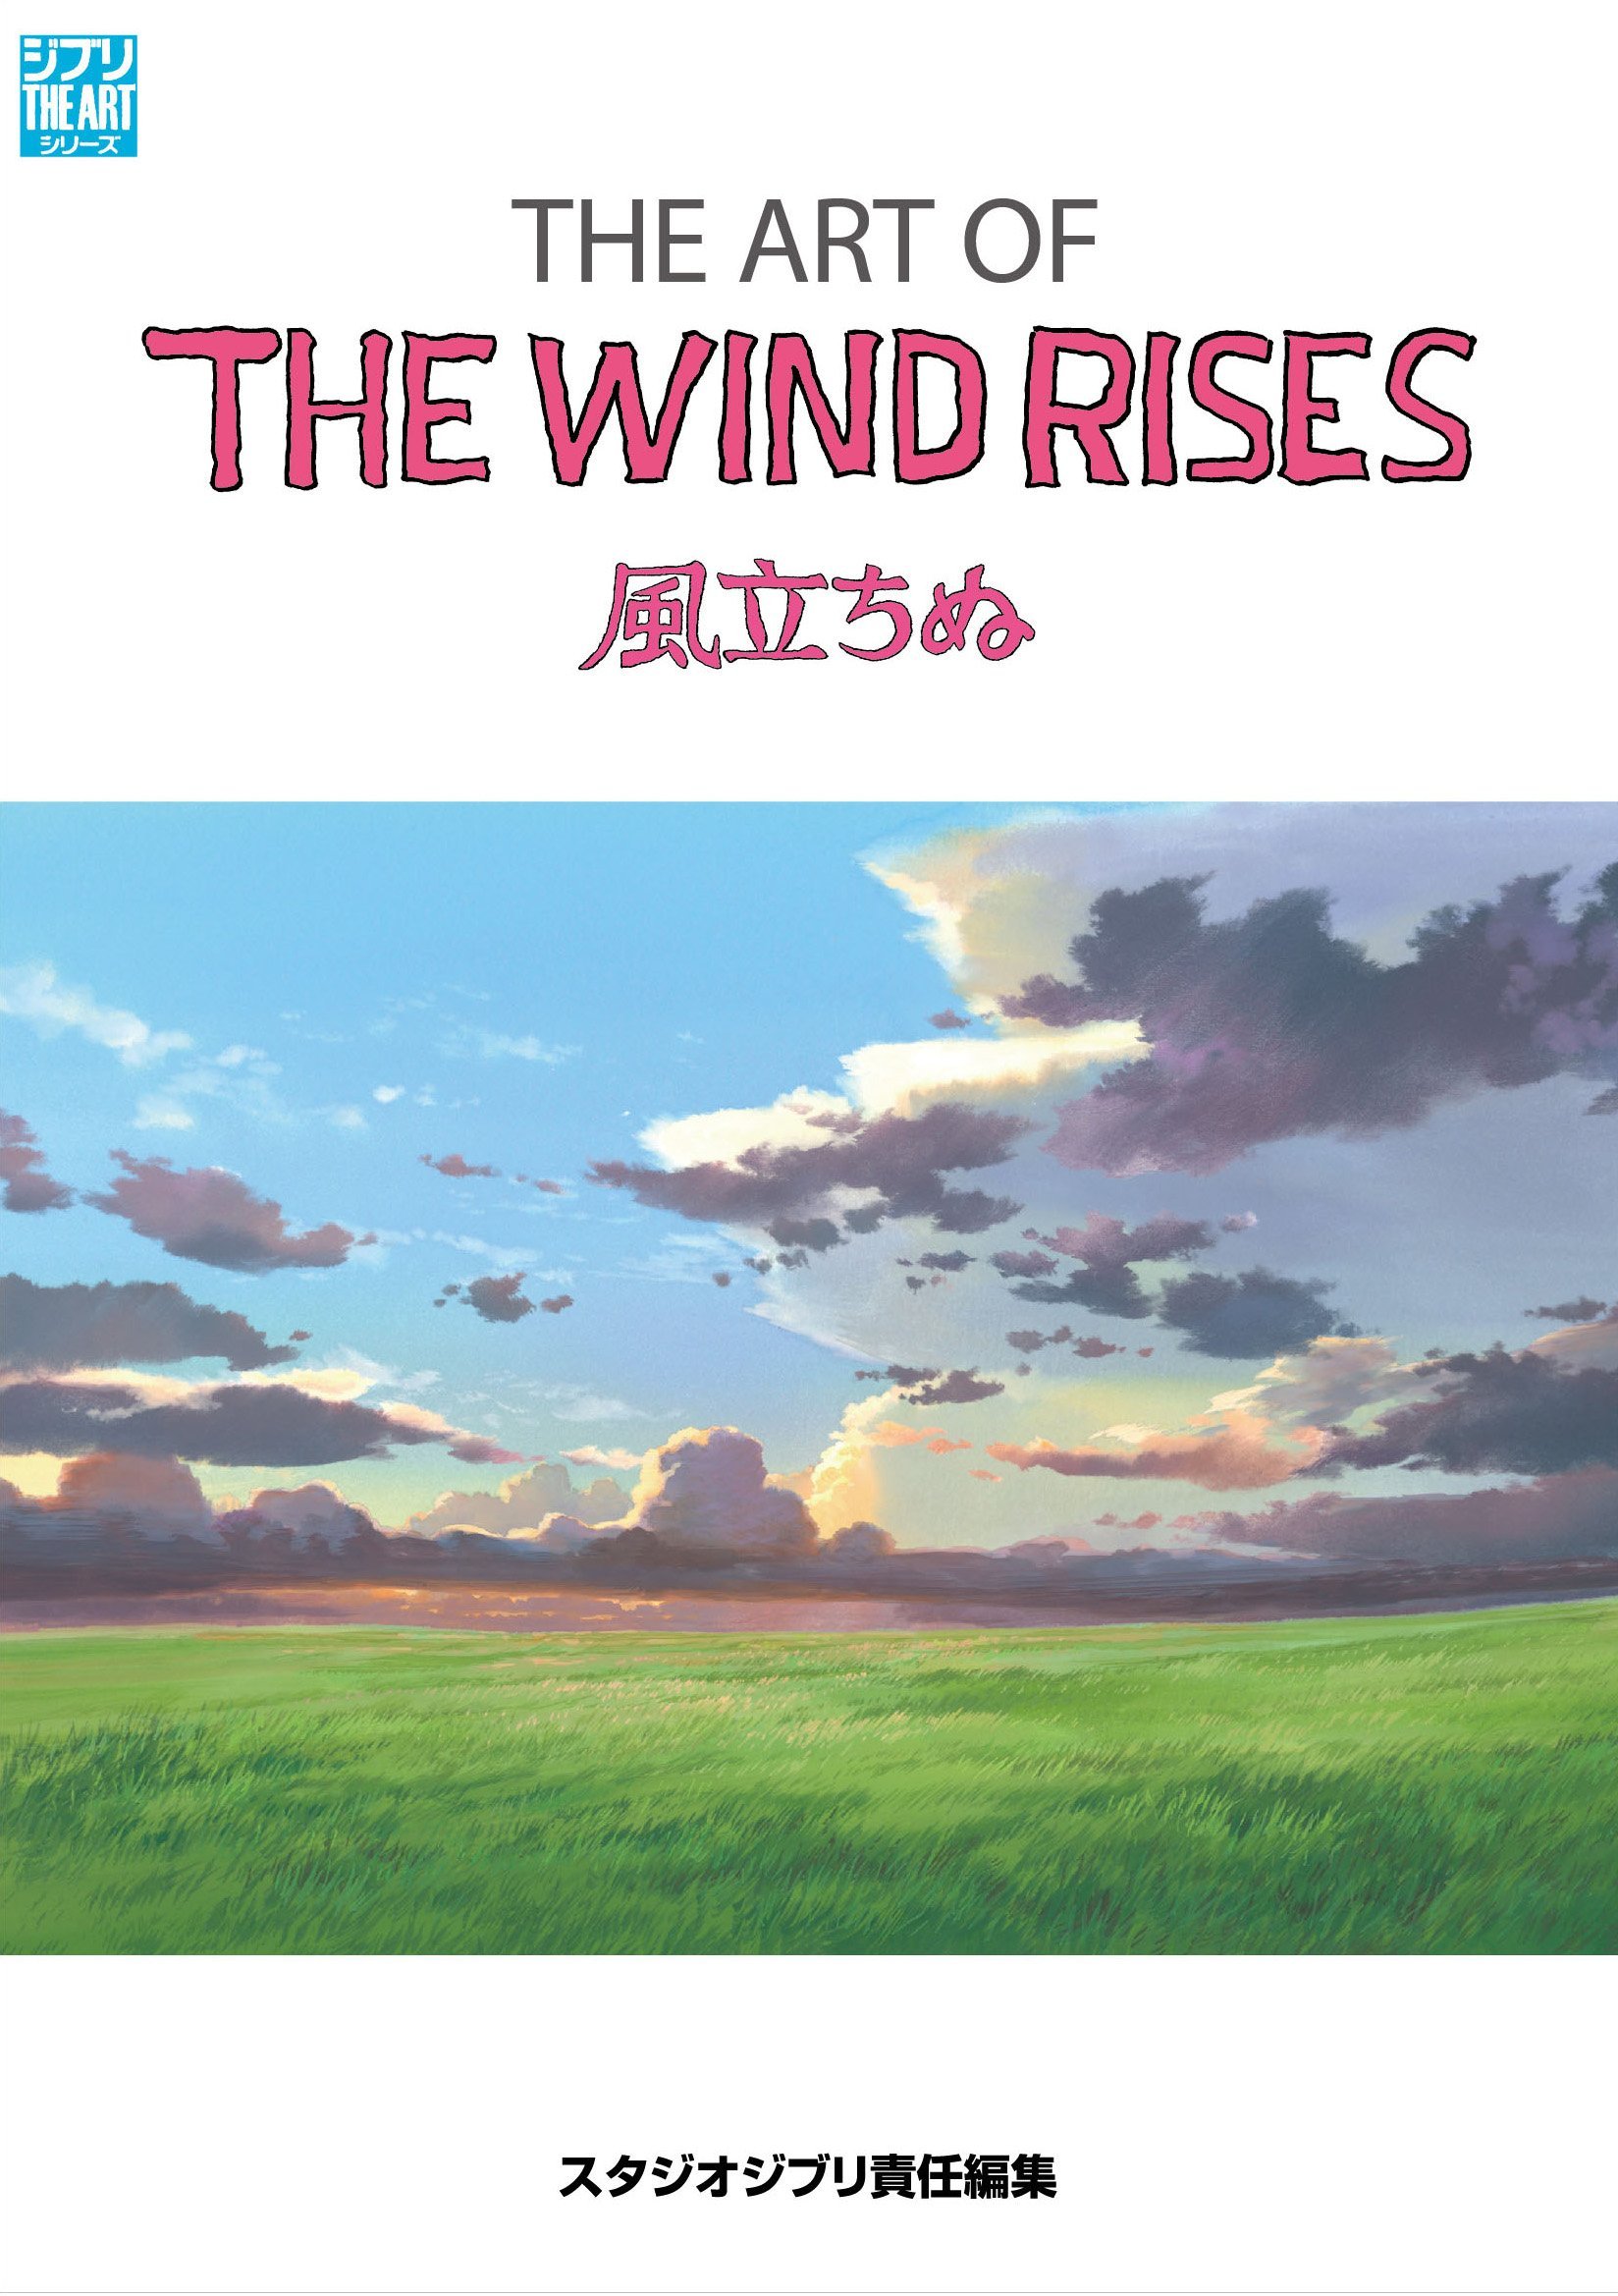 Гибли книга. Студия Ghibli книга. The Wind Rises artbook.